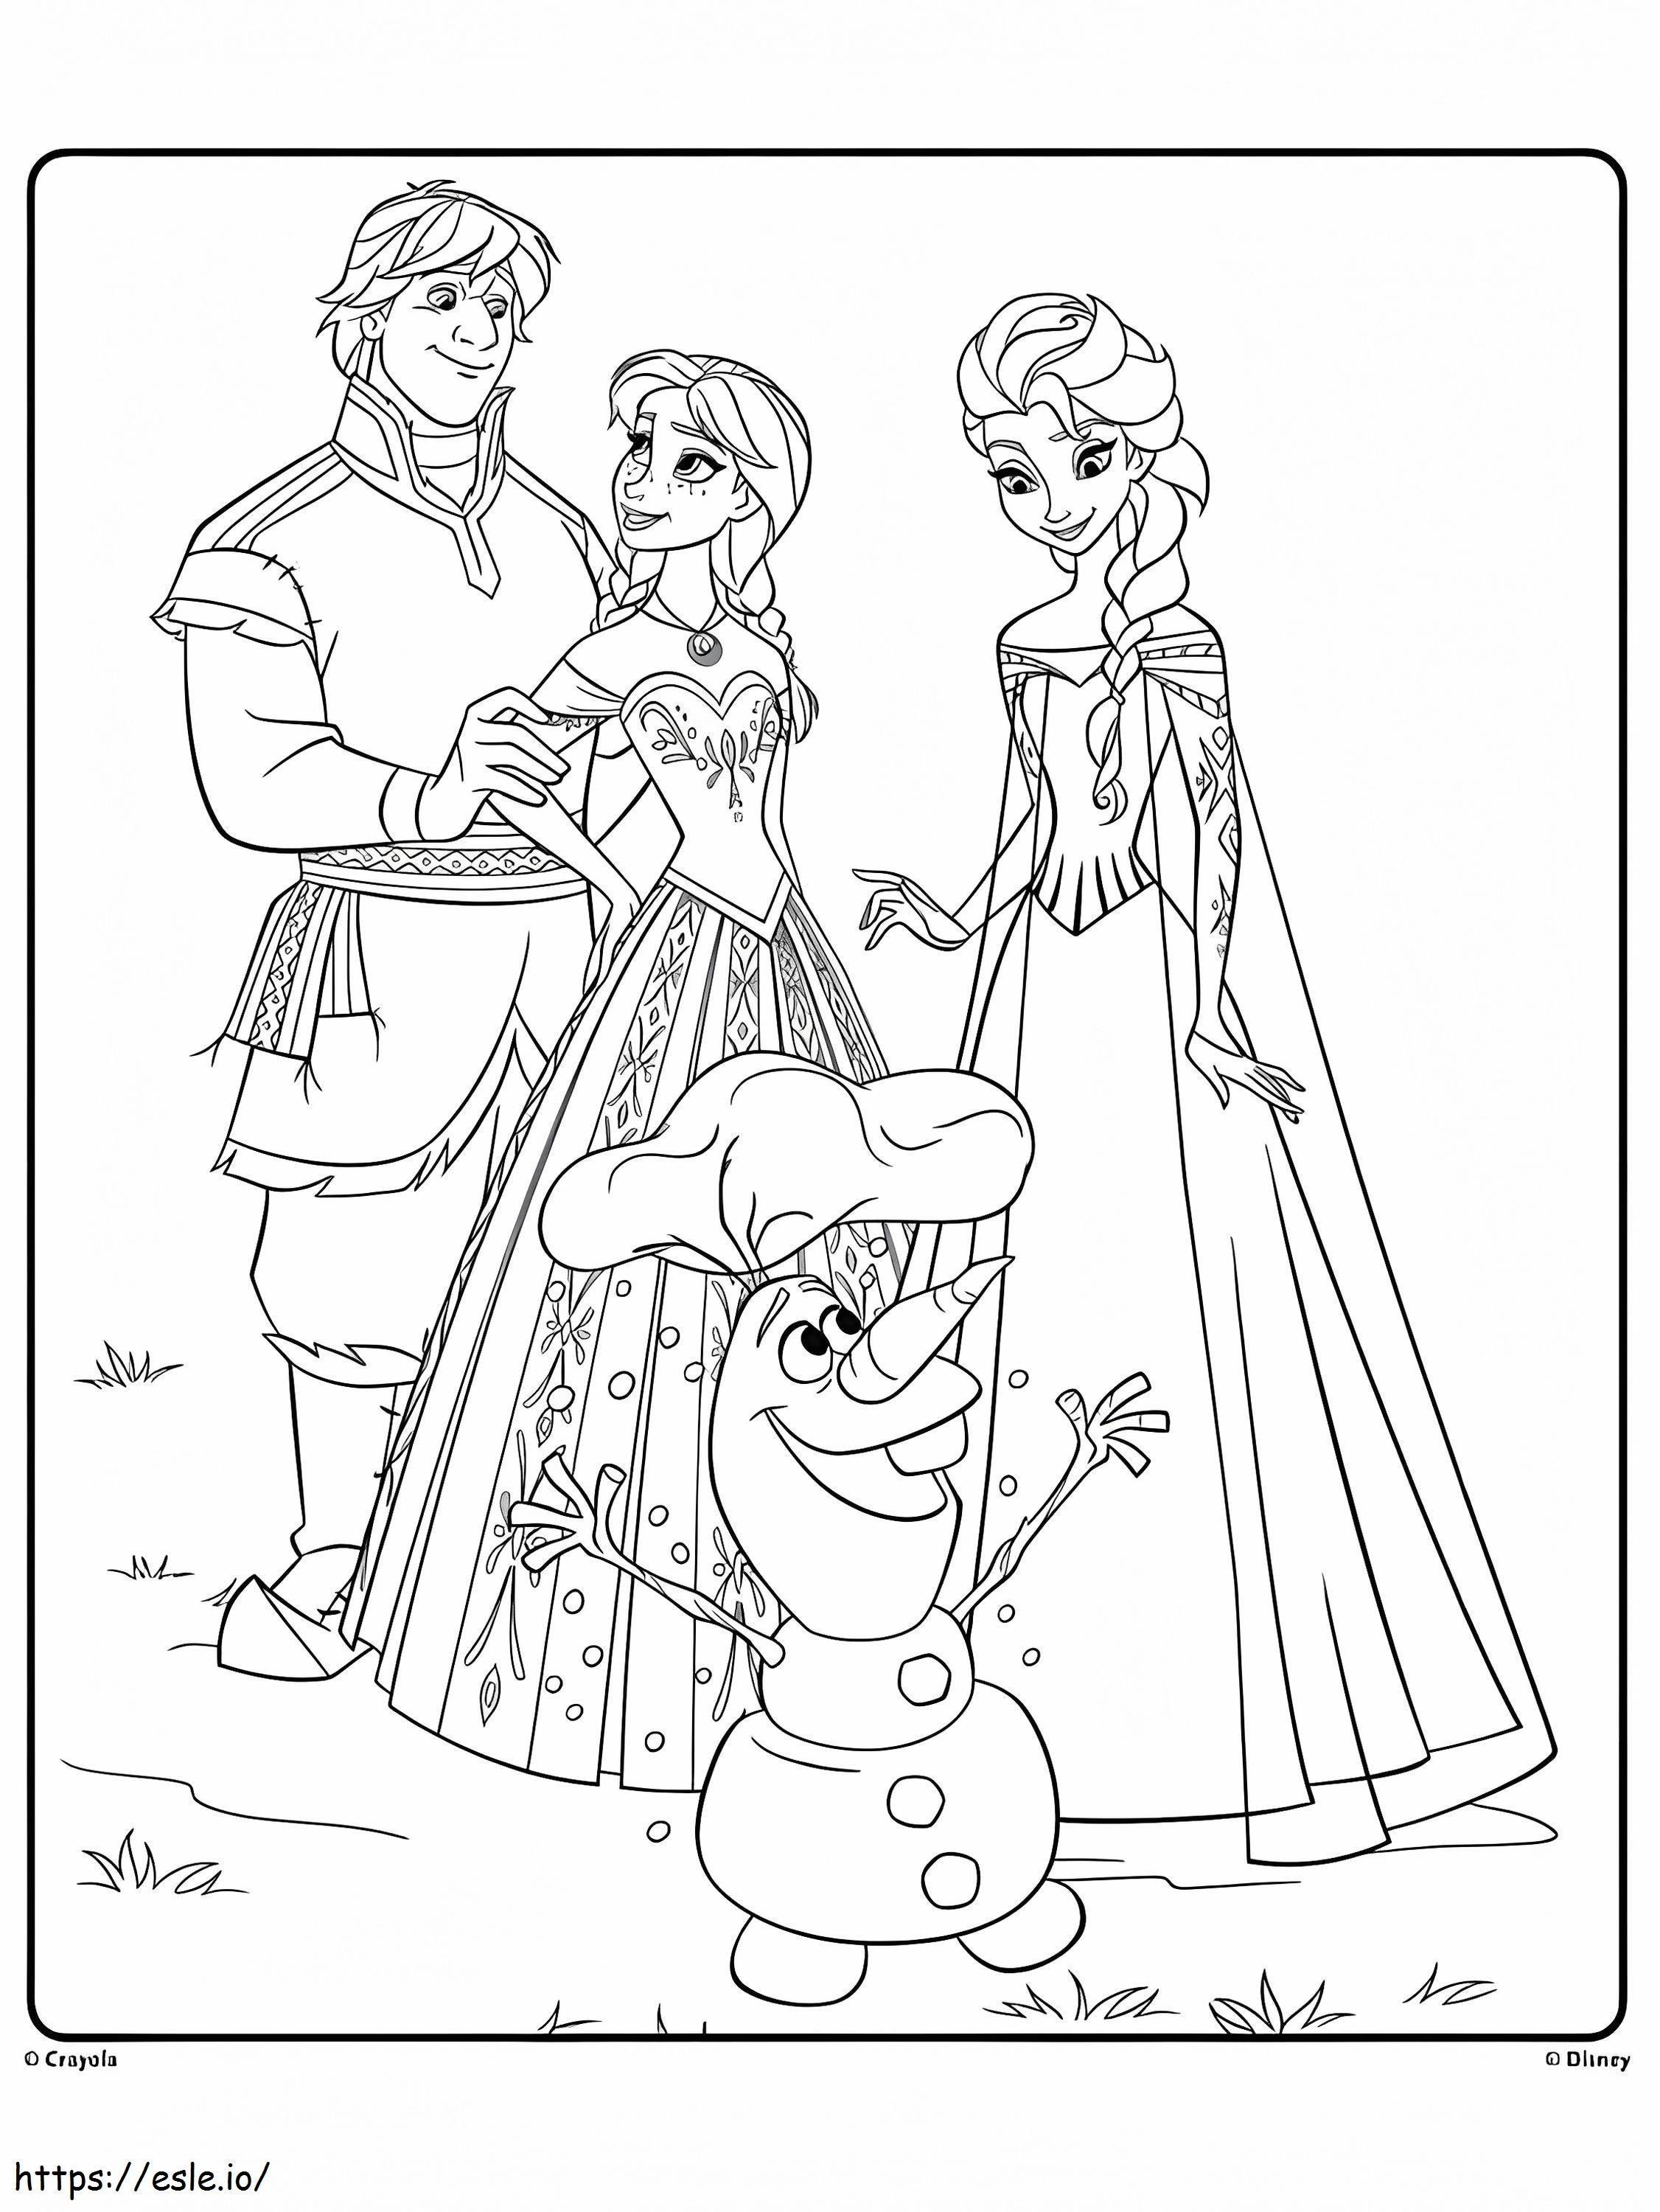 Olaf e gli amici da colorare